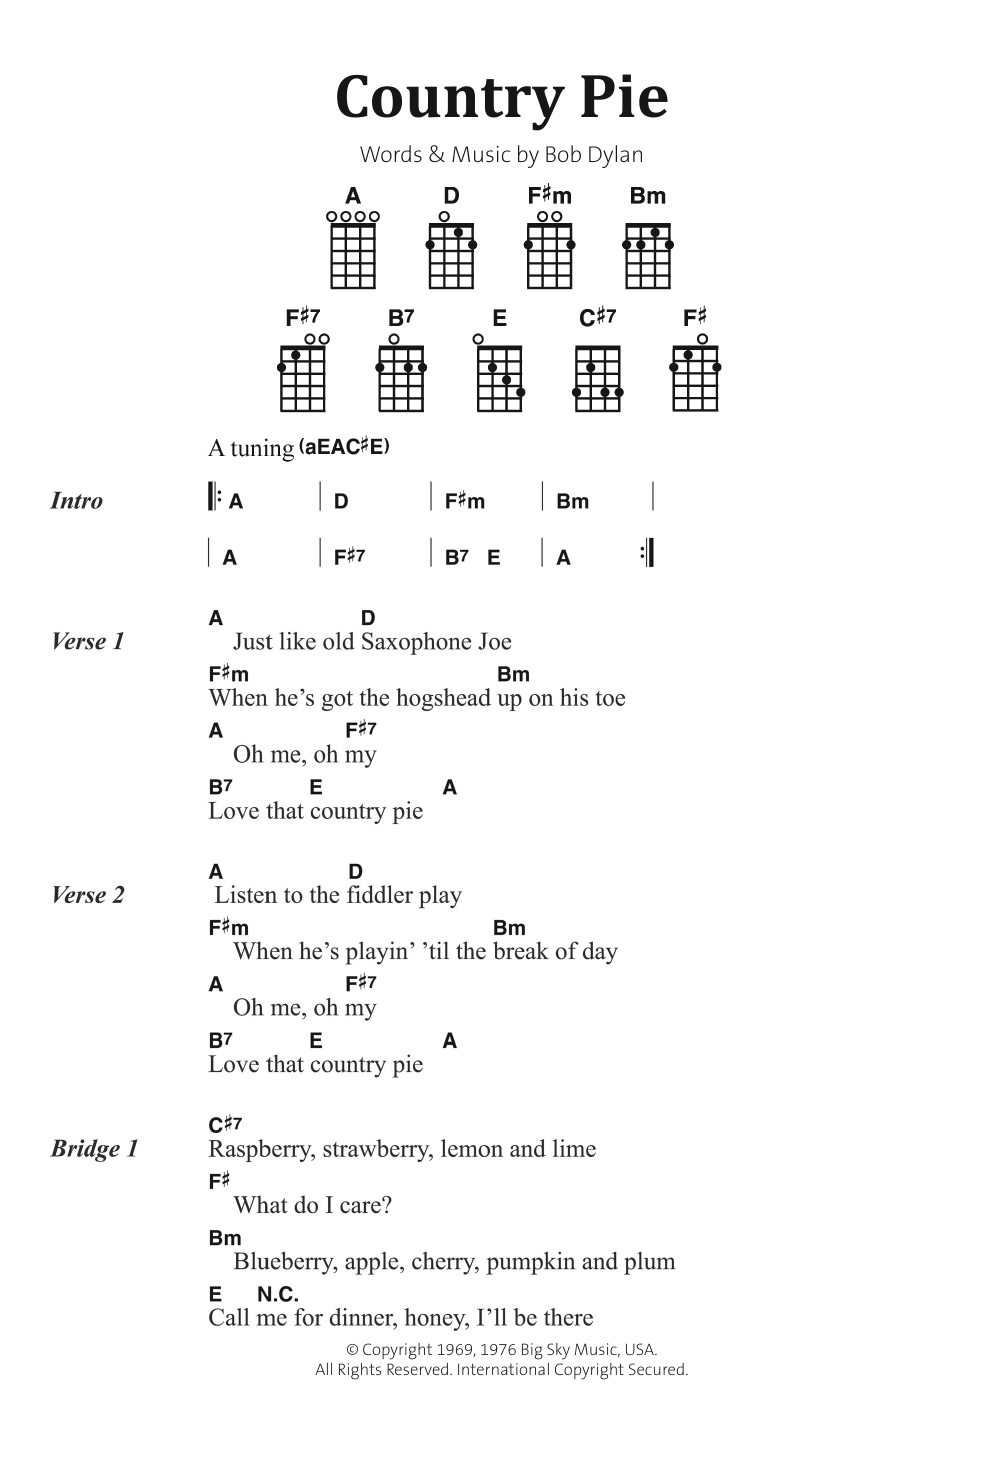 Bob Dylan Country Pie Sheet Music Notes & Chords for Banjo Lyrics & Chords - Download or Print PDF